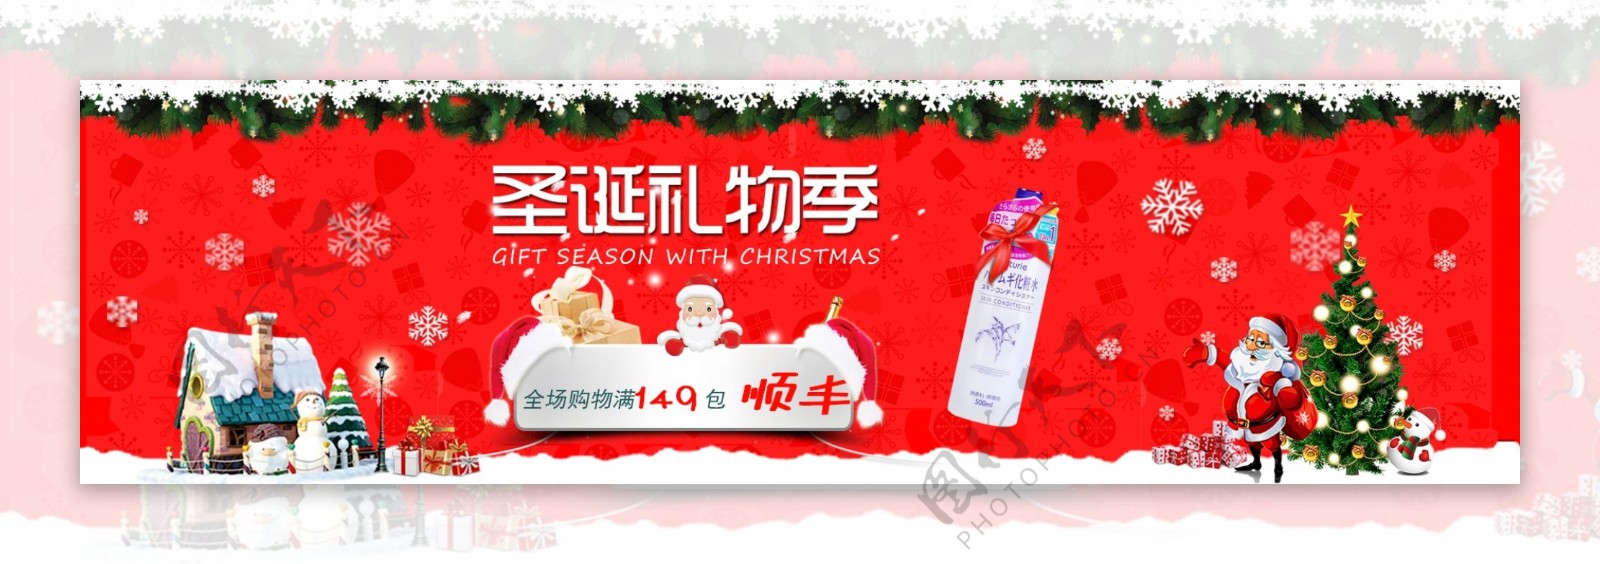 双旦轮播图圣诞节冬季淘宝电商banner